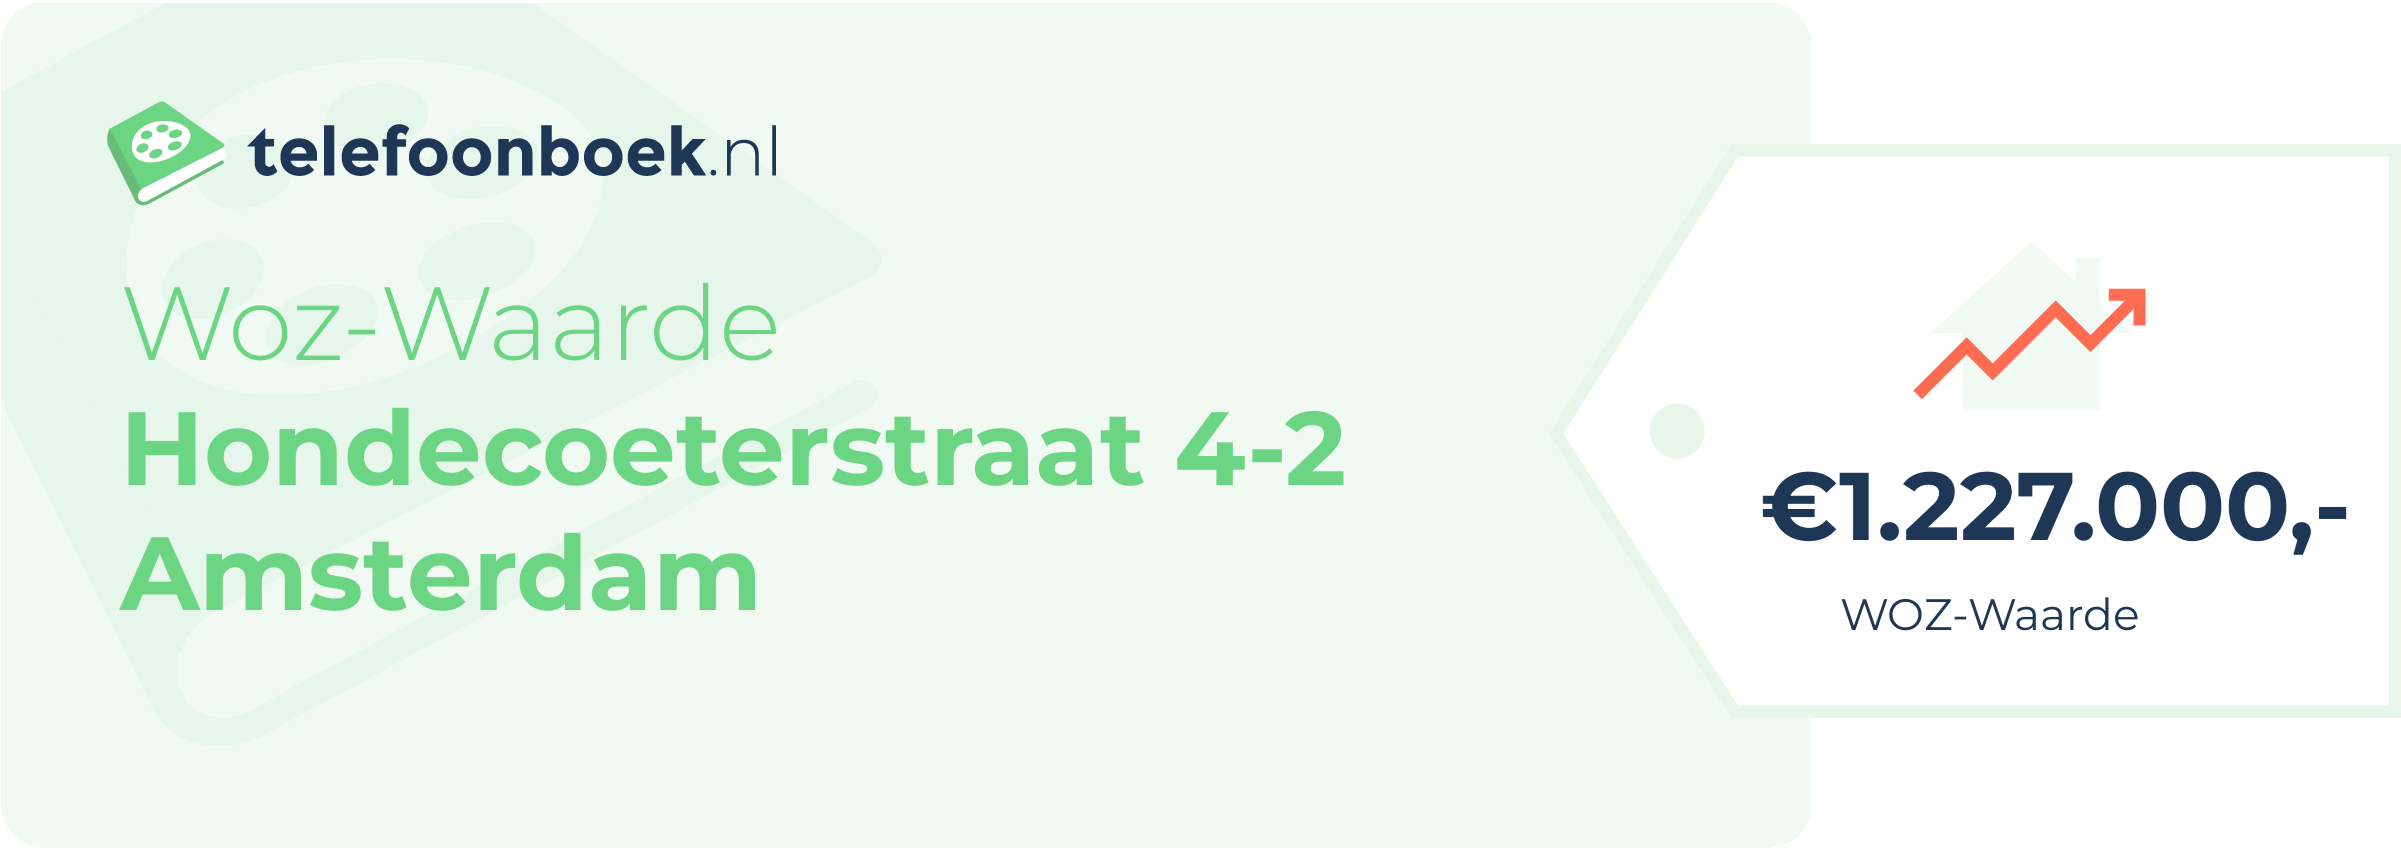 WOZ-waarde Hondecoeterstraat 4-2 Amsterdam